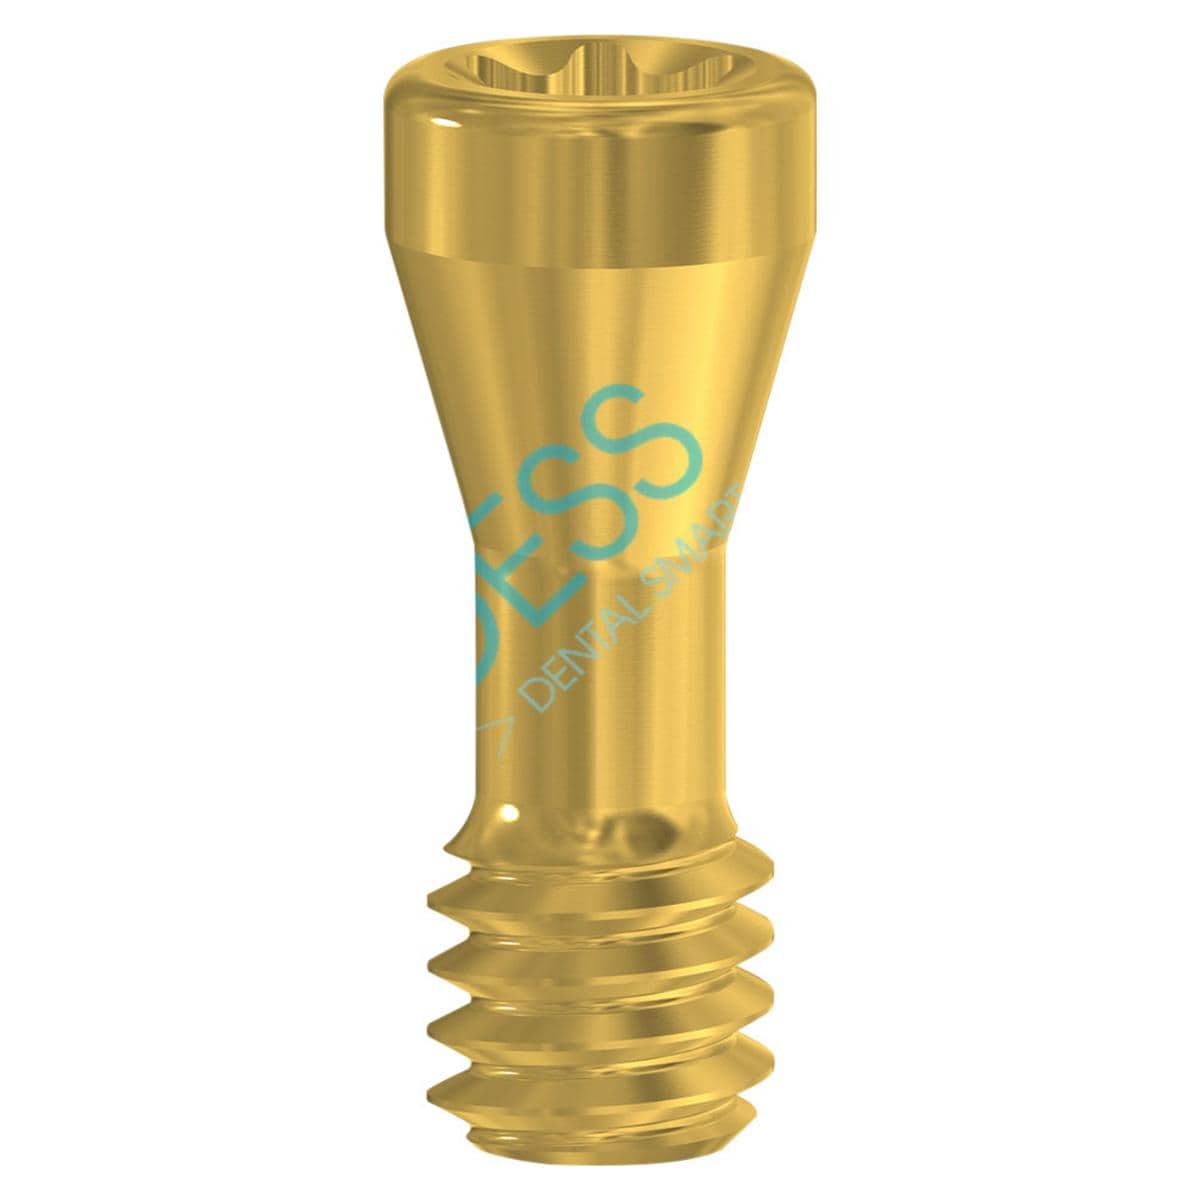 Abutmentschraube Torx® auf Implantat - kompatibel mit Straumann® - RN Ø 4,8 mm / WN Ø 6,5 mm, TIN-Beschichtung, Packung 1 Stück